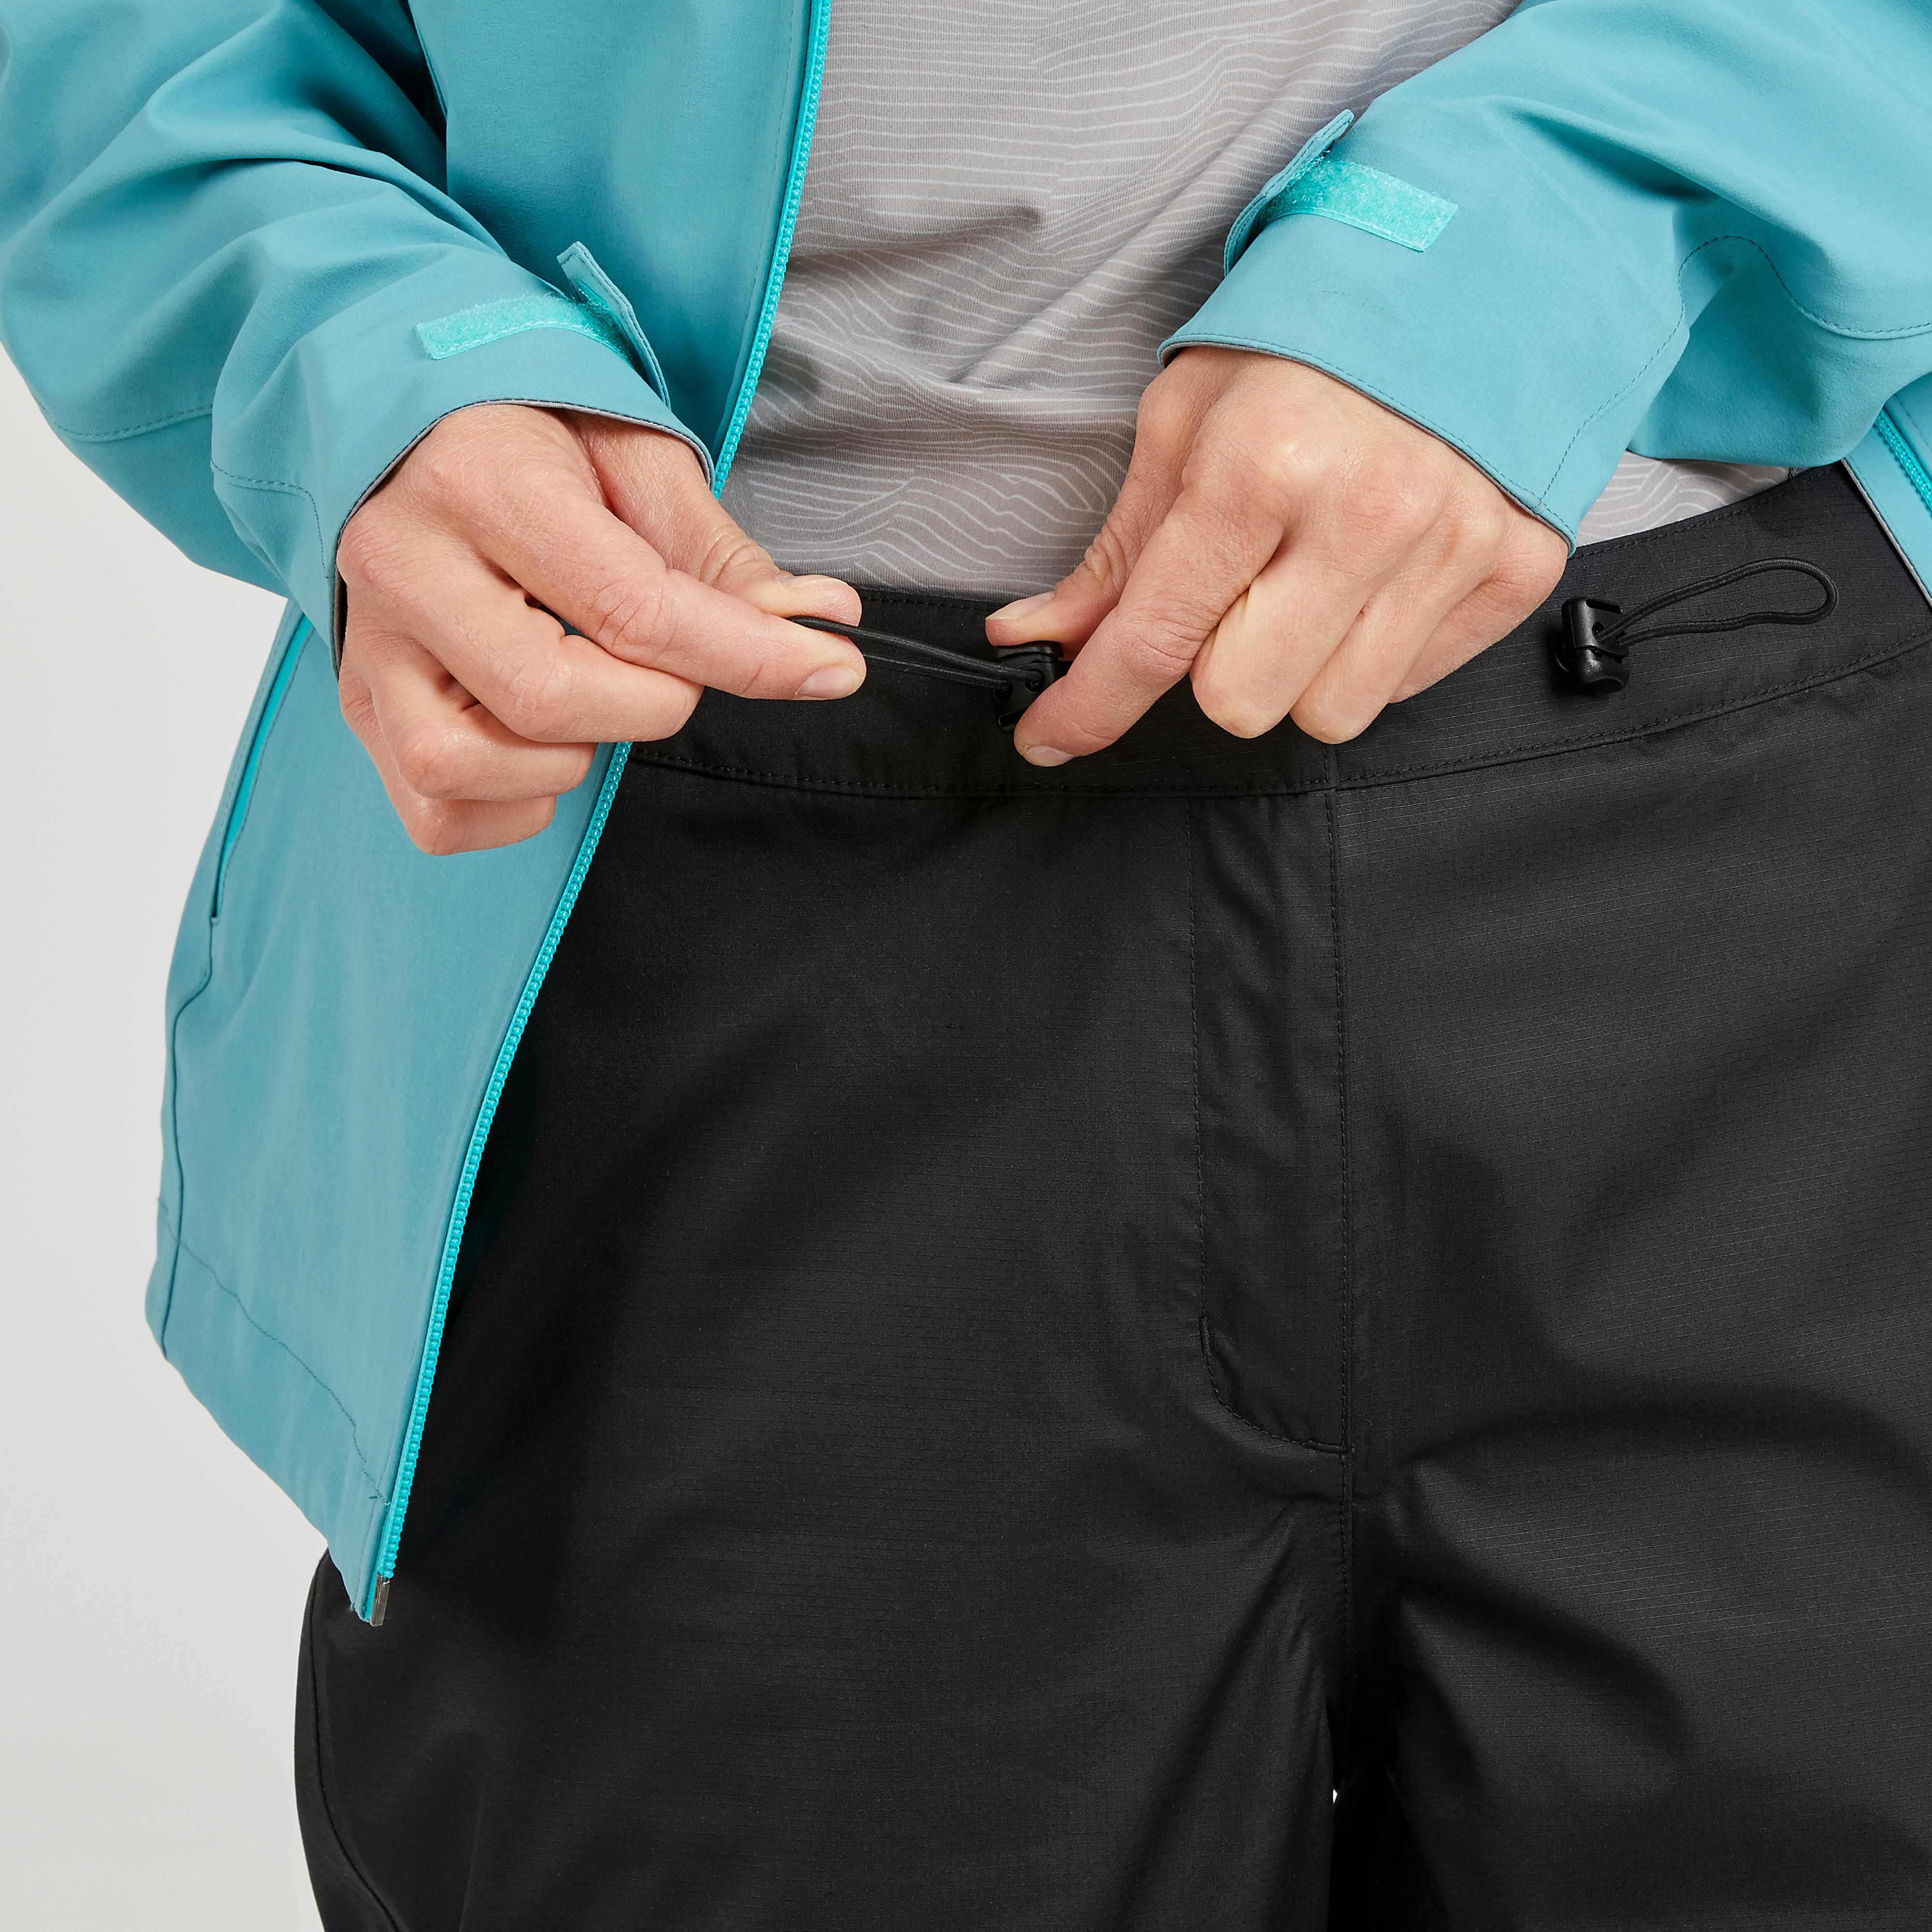 Pantalon imperméable femme – MH 500 noir - QUECHUA